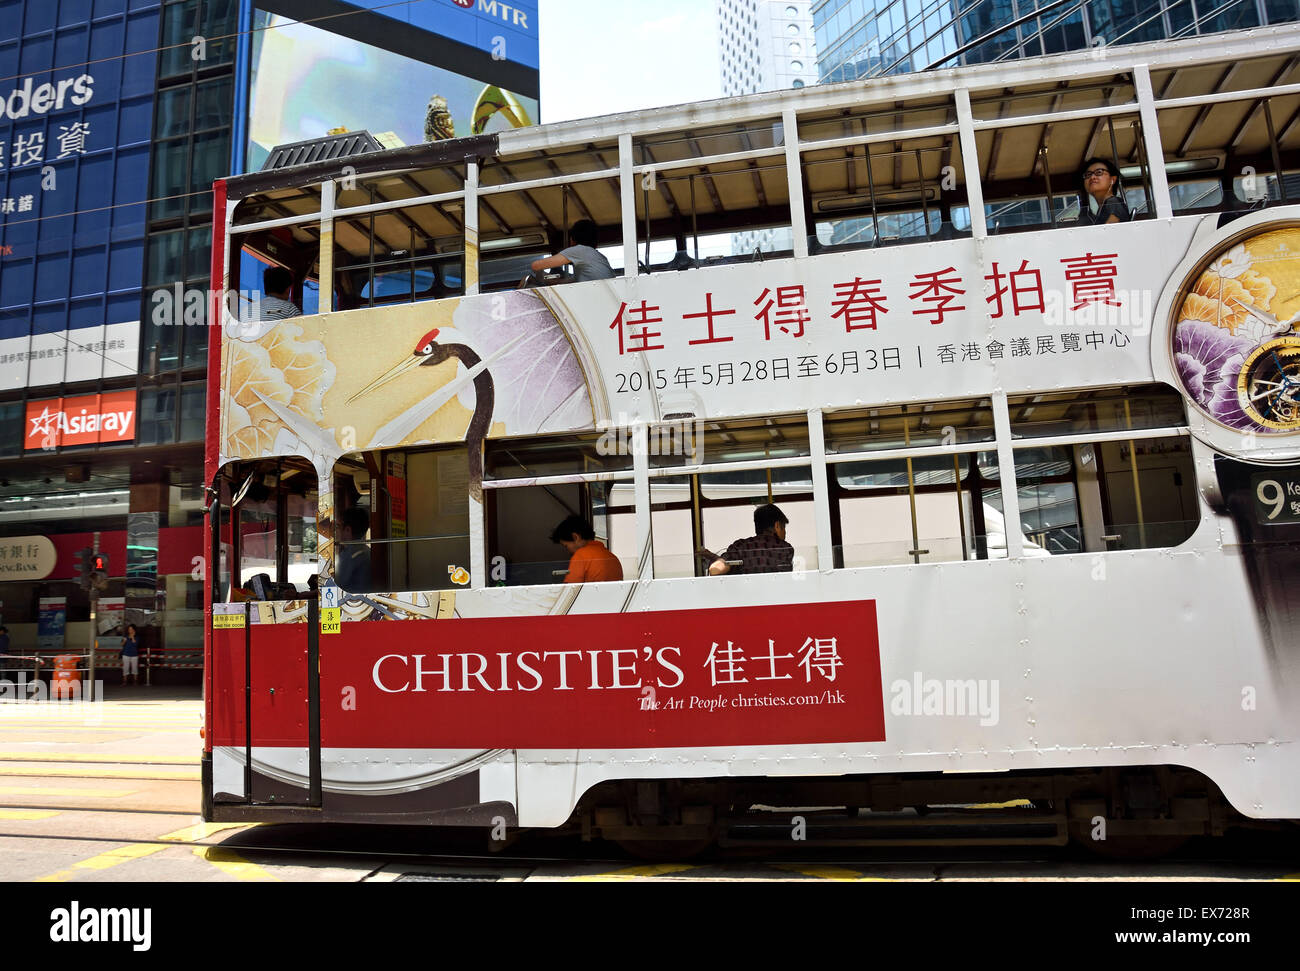 Double Deck avec le tram Tramway publicité corps Hong Kong Chine ( occupé l'île de Hong Kong ) Banque D'Images